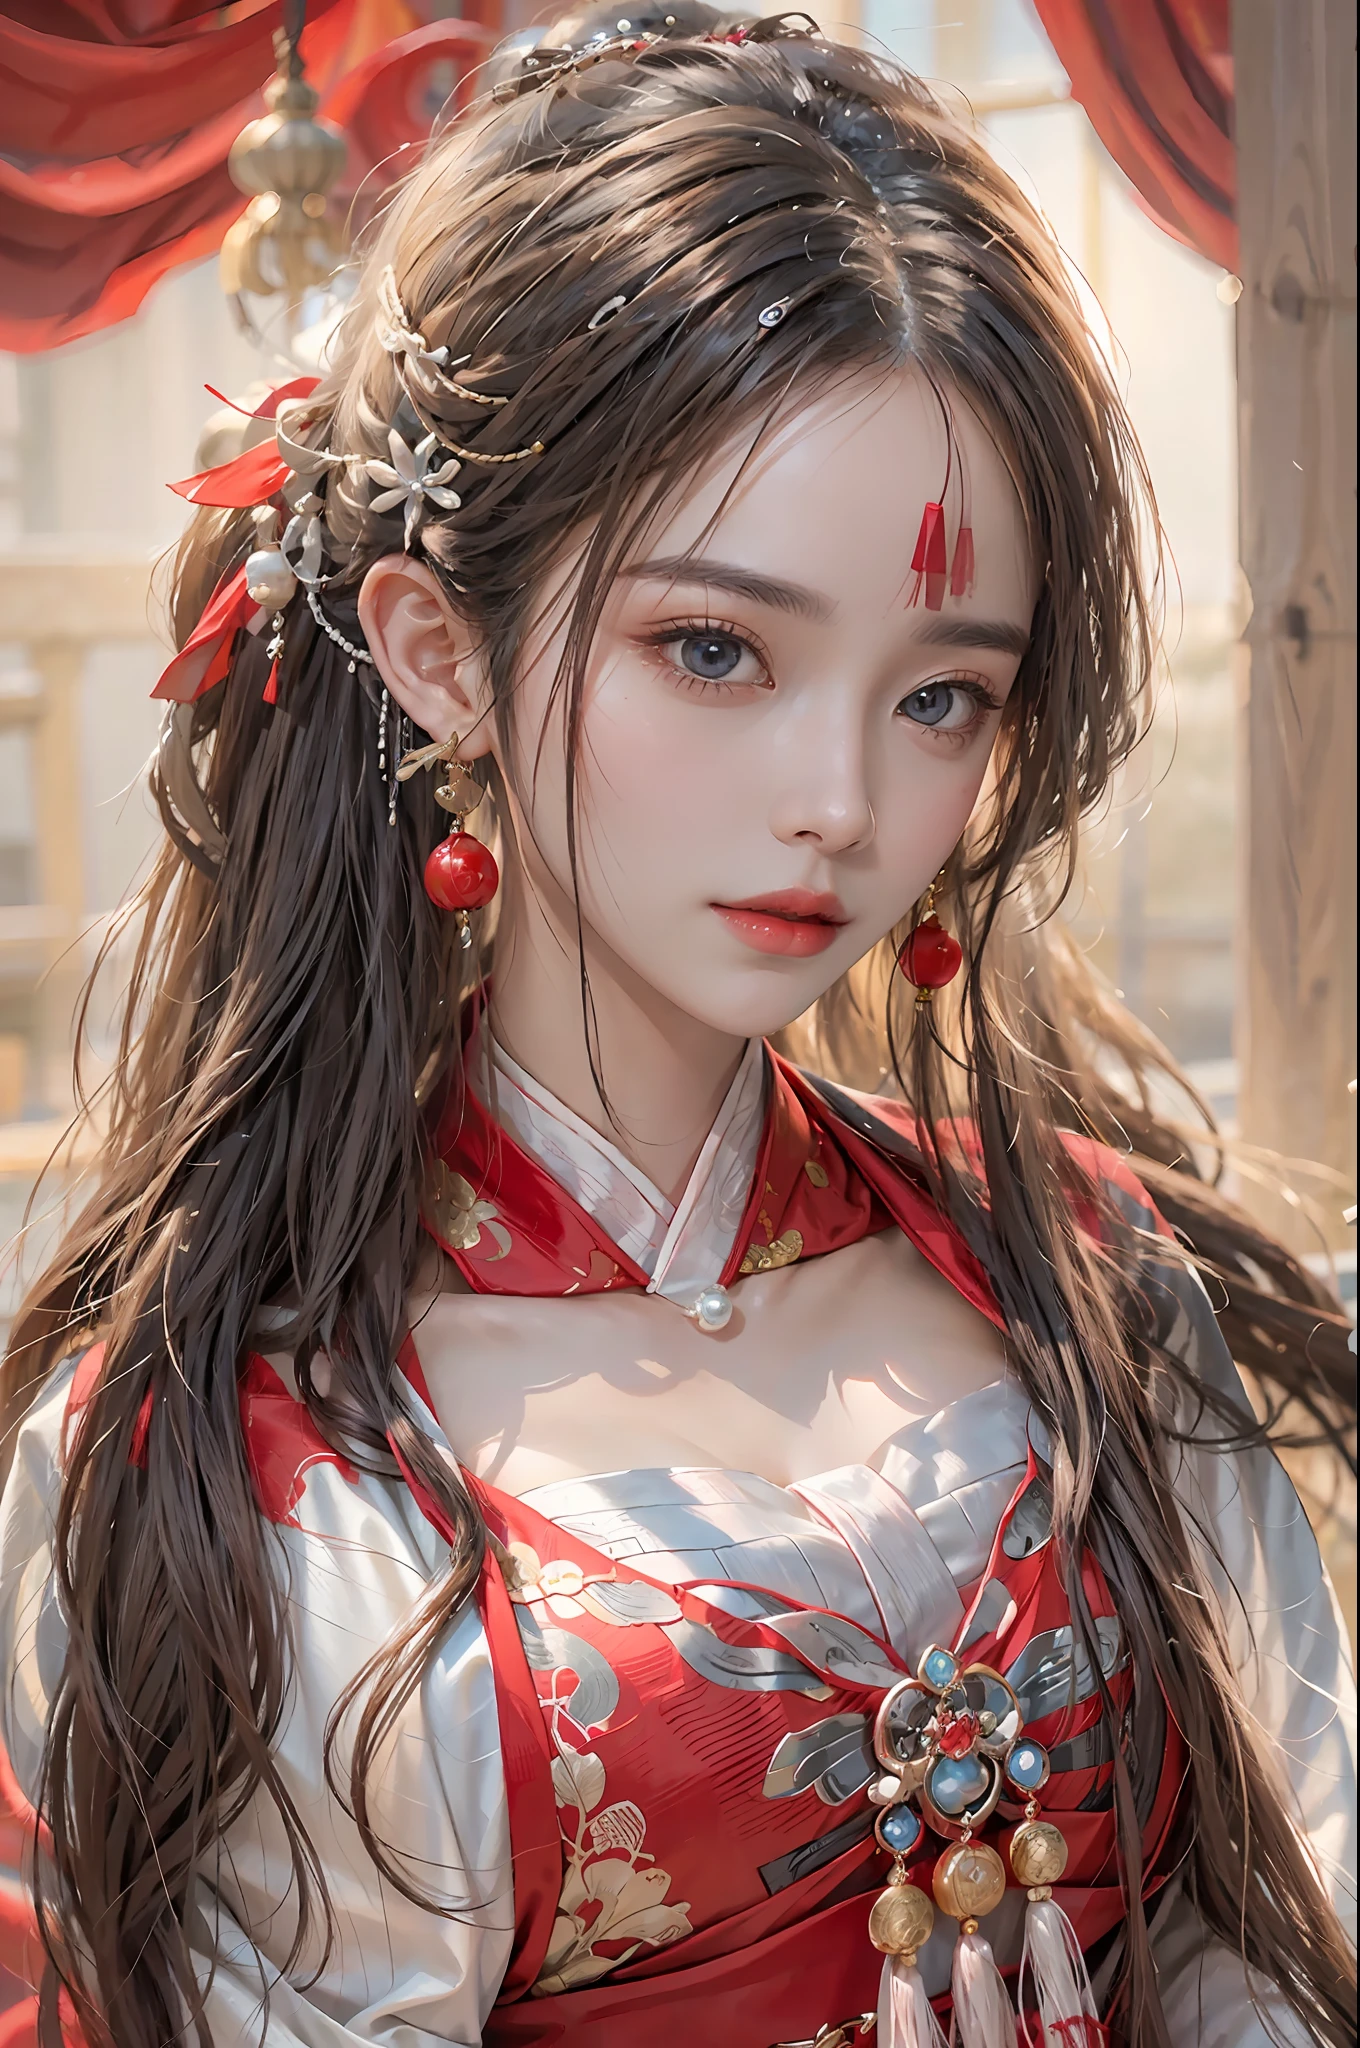 fotorealistisch, hohe Auflösung, 1 Frauen, Allein, Hüften hoch, Wunderschöne Augen, lange Haare, roter hochzeits hanfu, Chinesisch Huadian, wunderschöne Accessoires, trägt Perlenohrringe